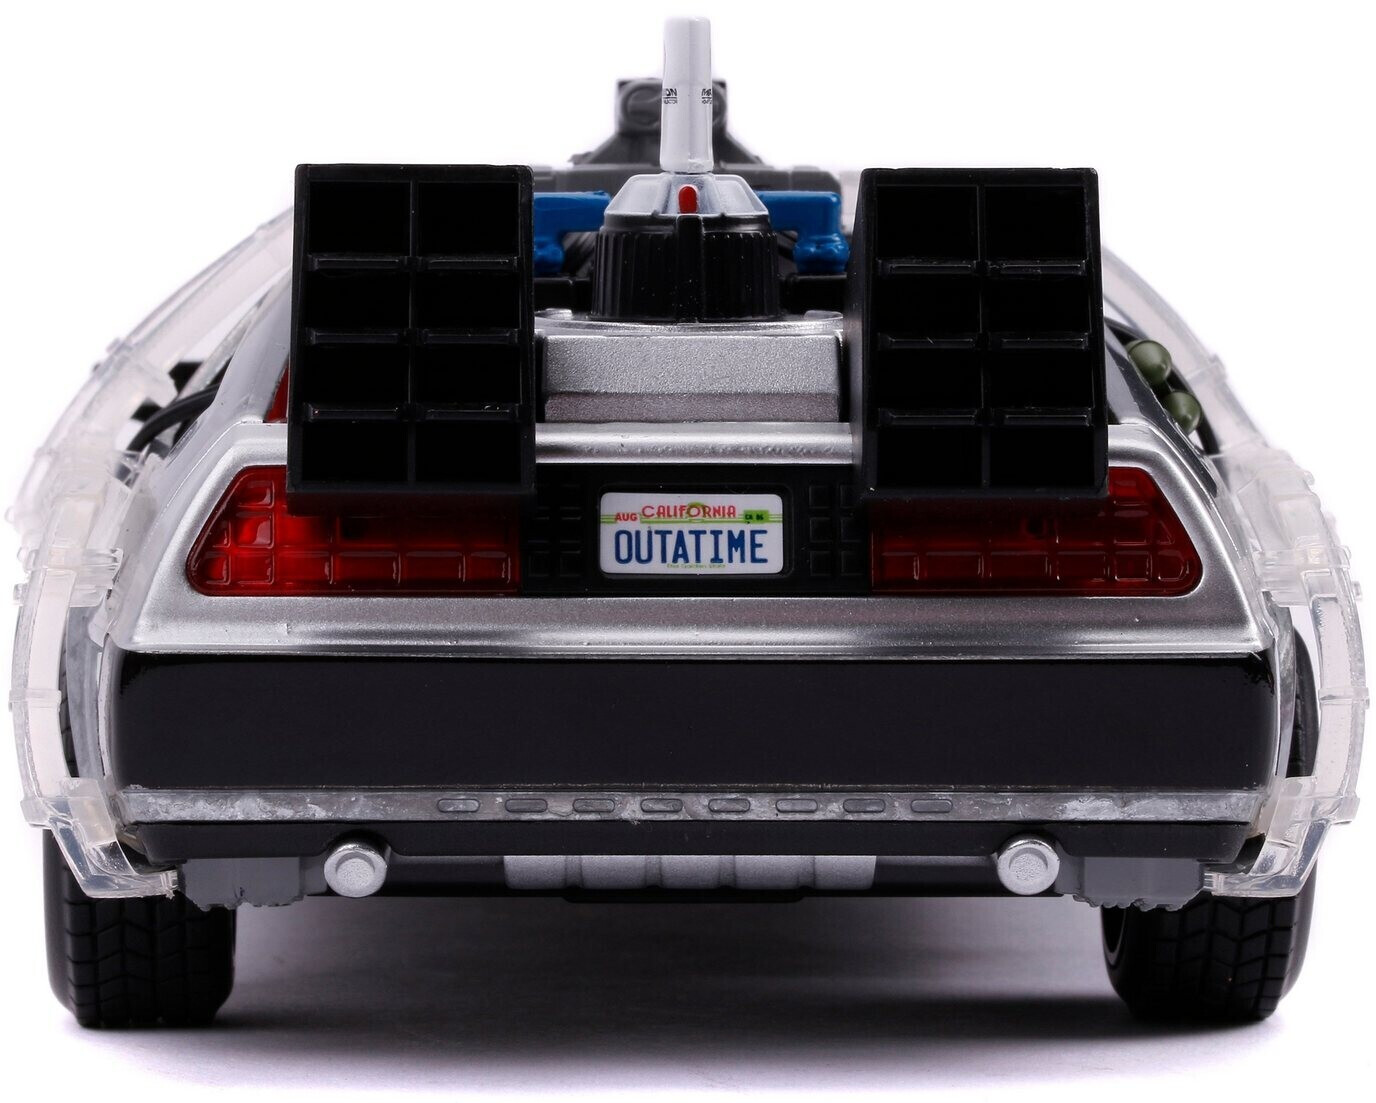 DeLorean Zurück in die Zukunft Modellauto - NerdyGeekStore